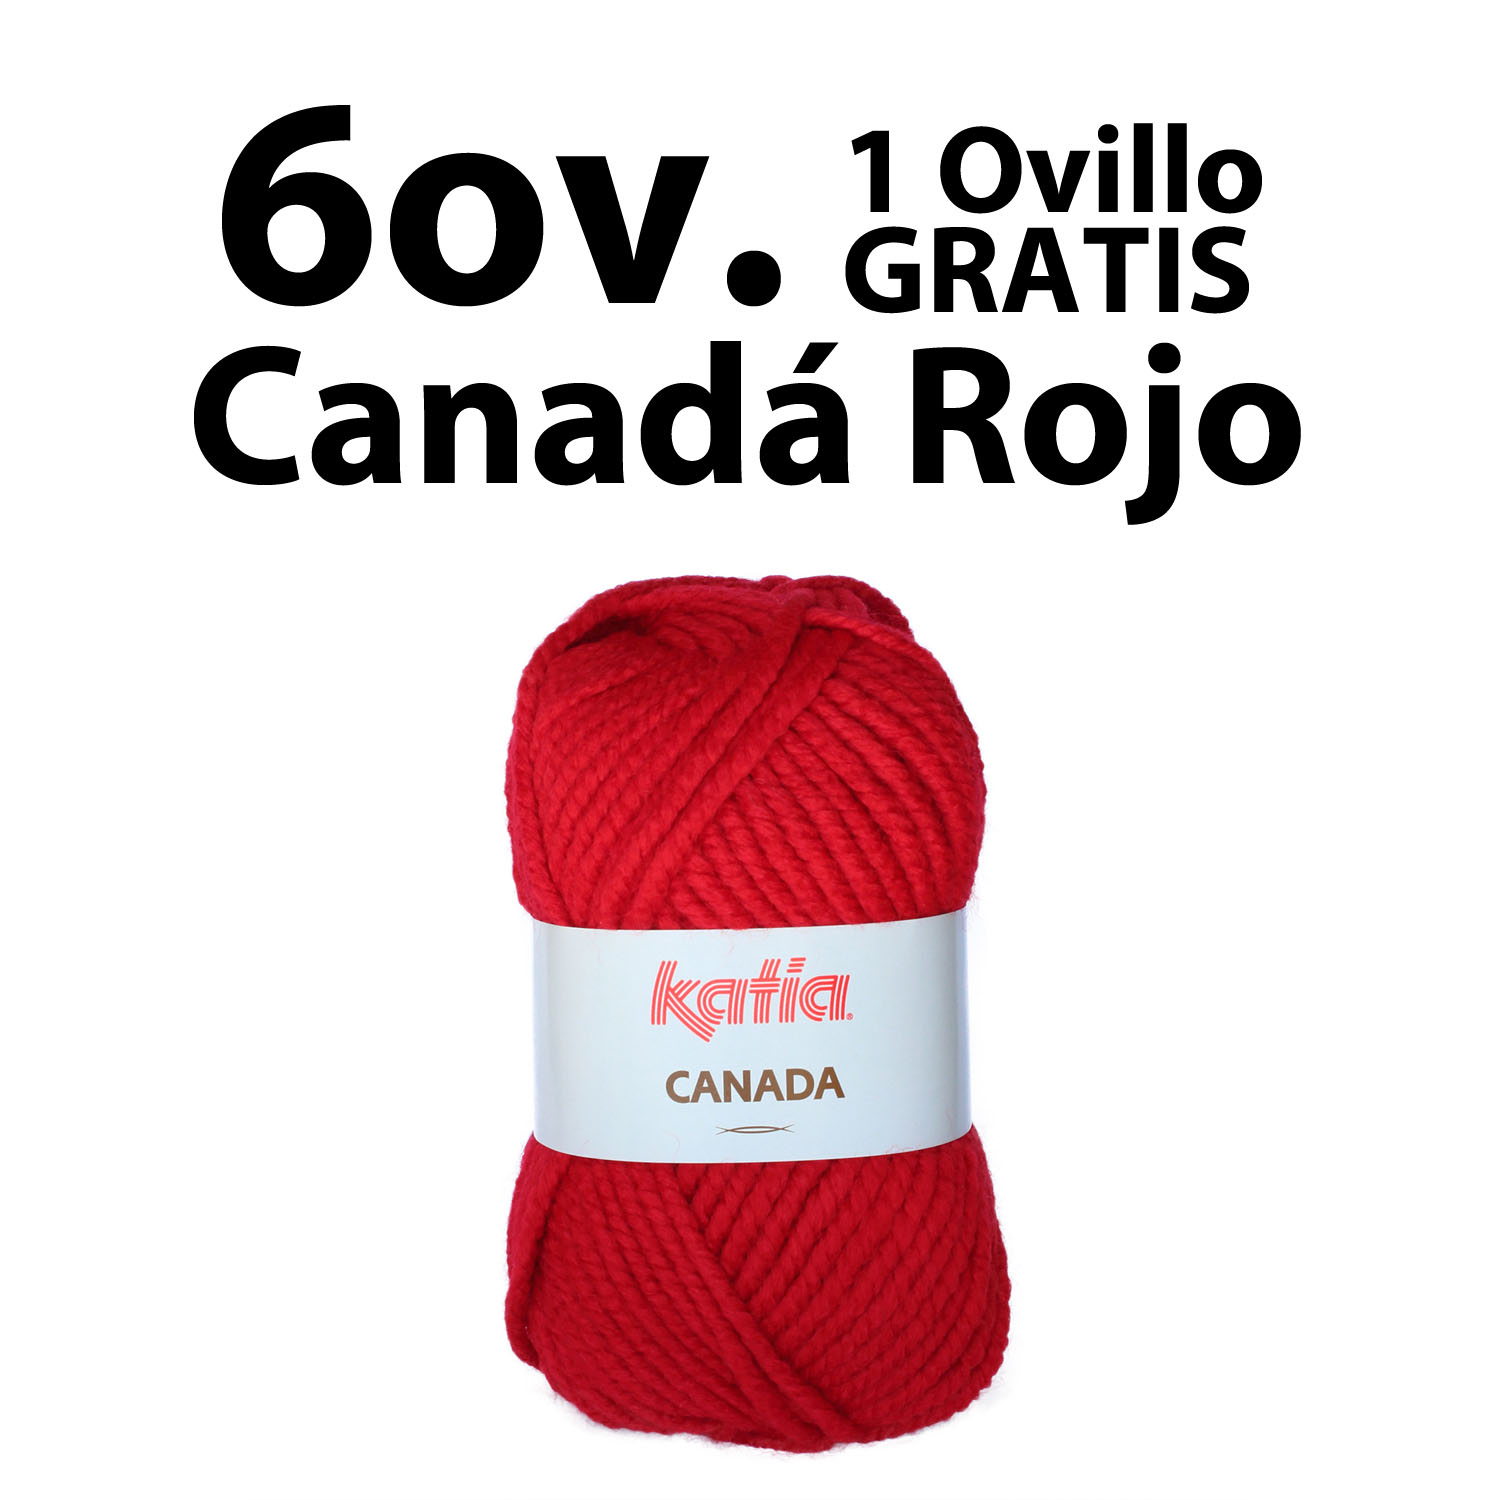 6-OVILLOS-CANADA-ROJO-OVILLO-GRATIS